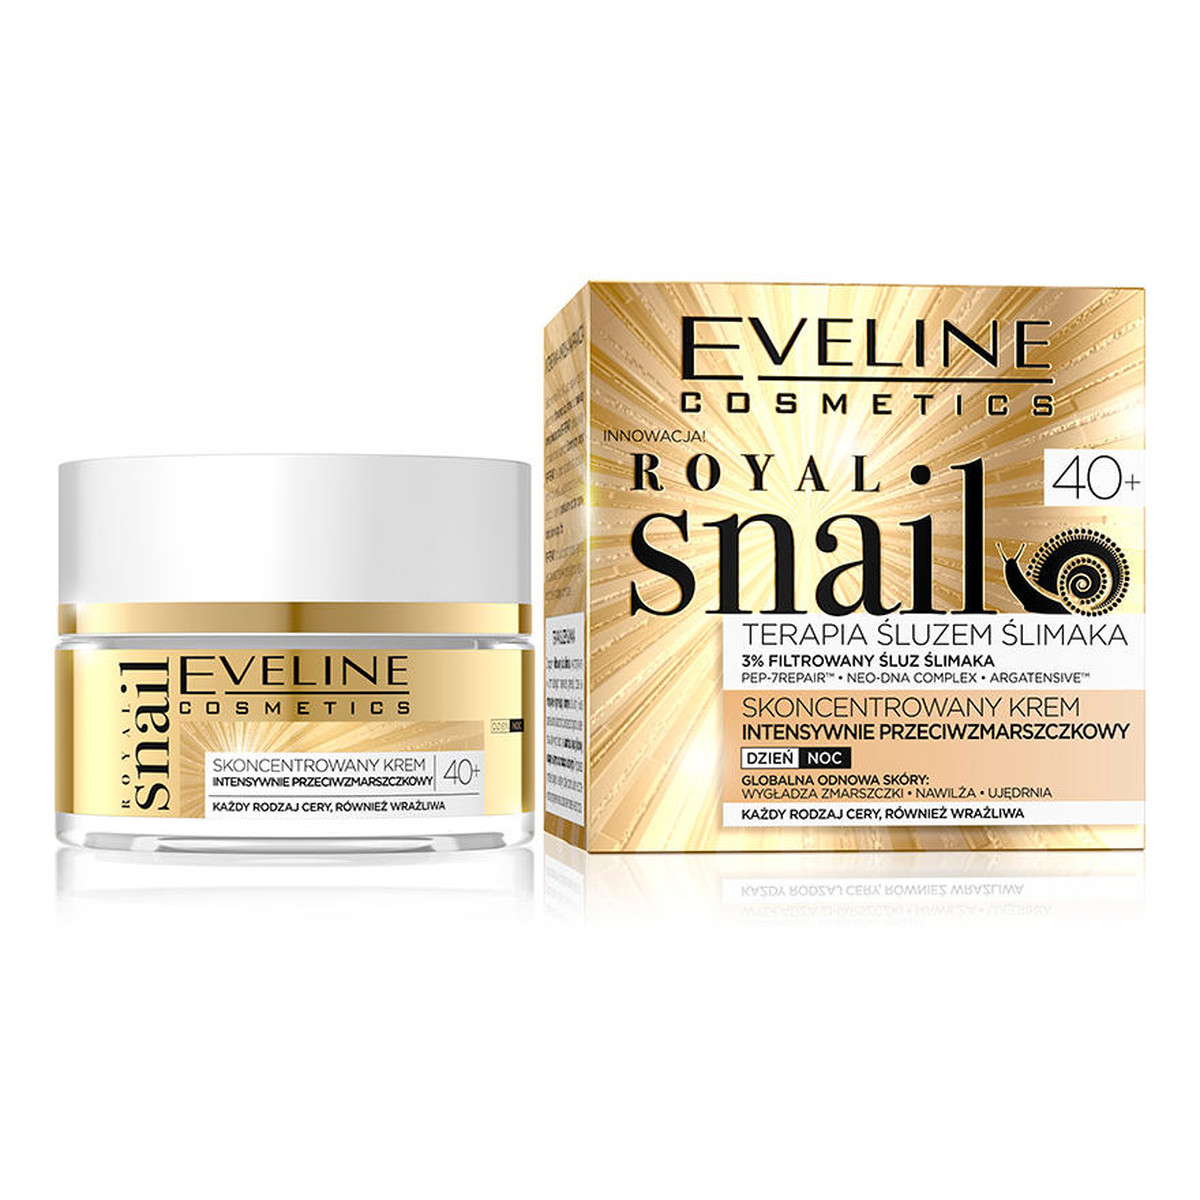 Eveline Royal Snail skoncentrowany krem intensywnie przeciwzmarszczkowy 40+ na dzień i na noc 50ml